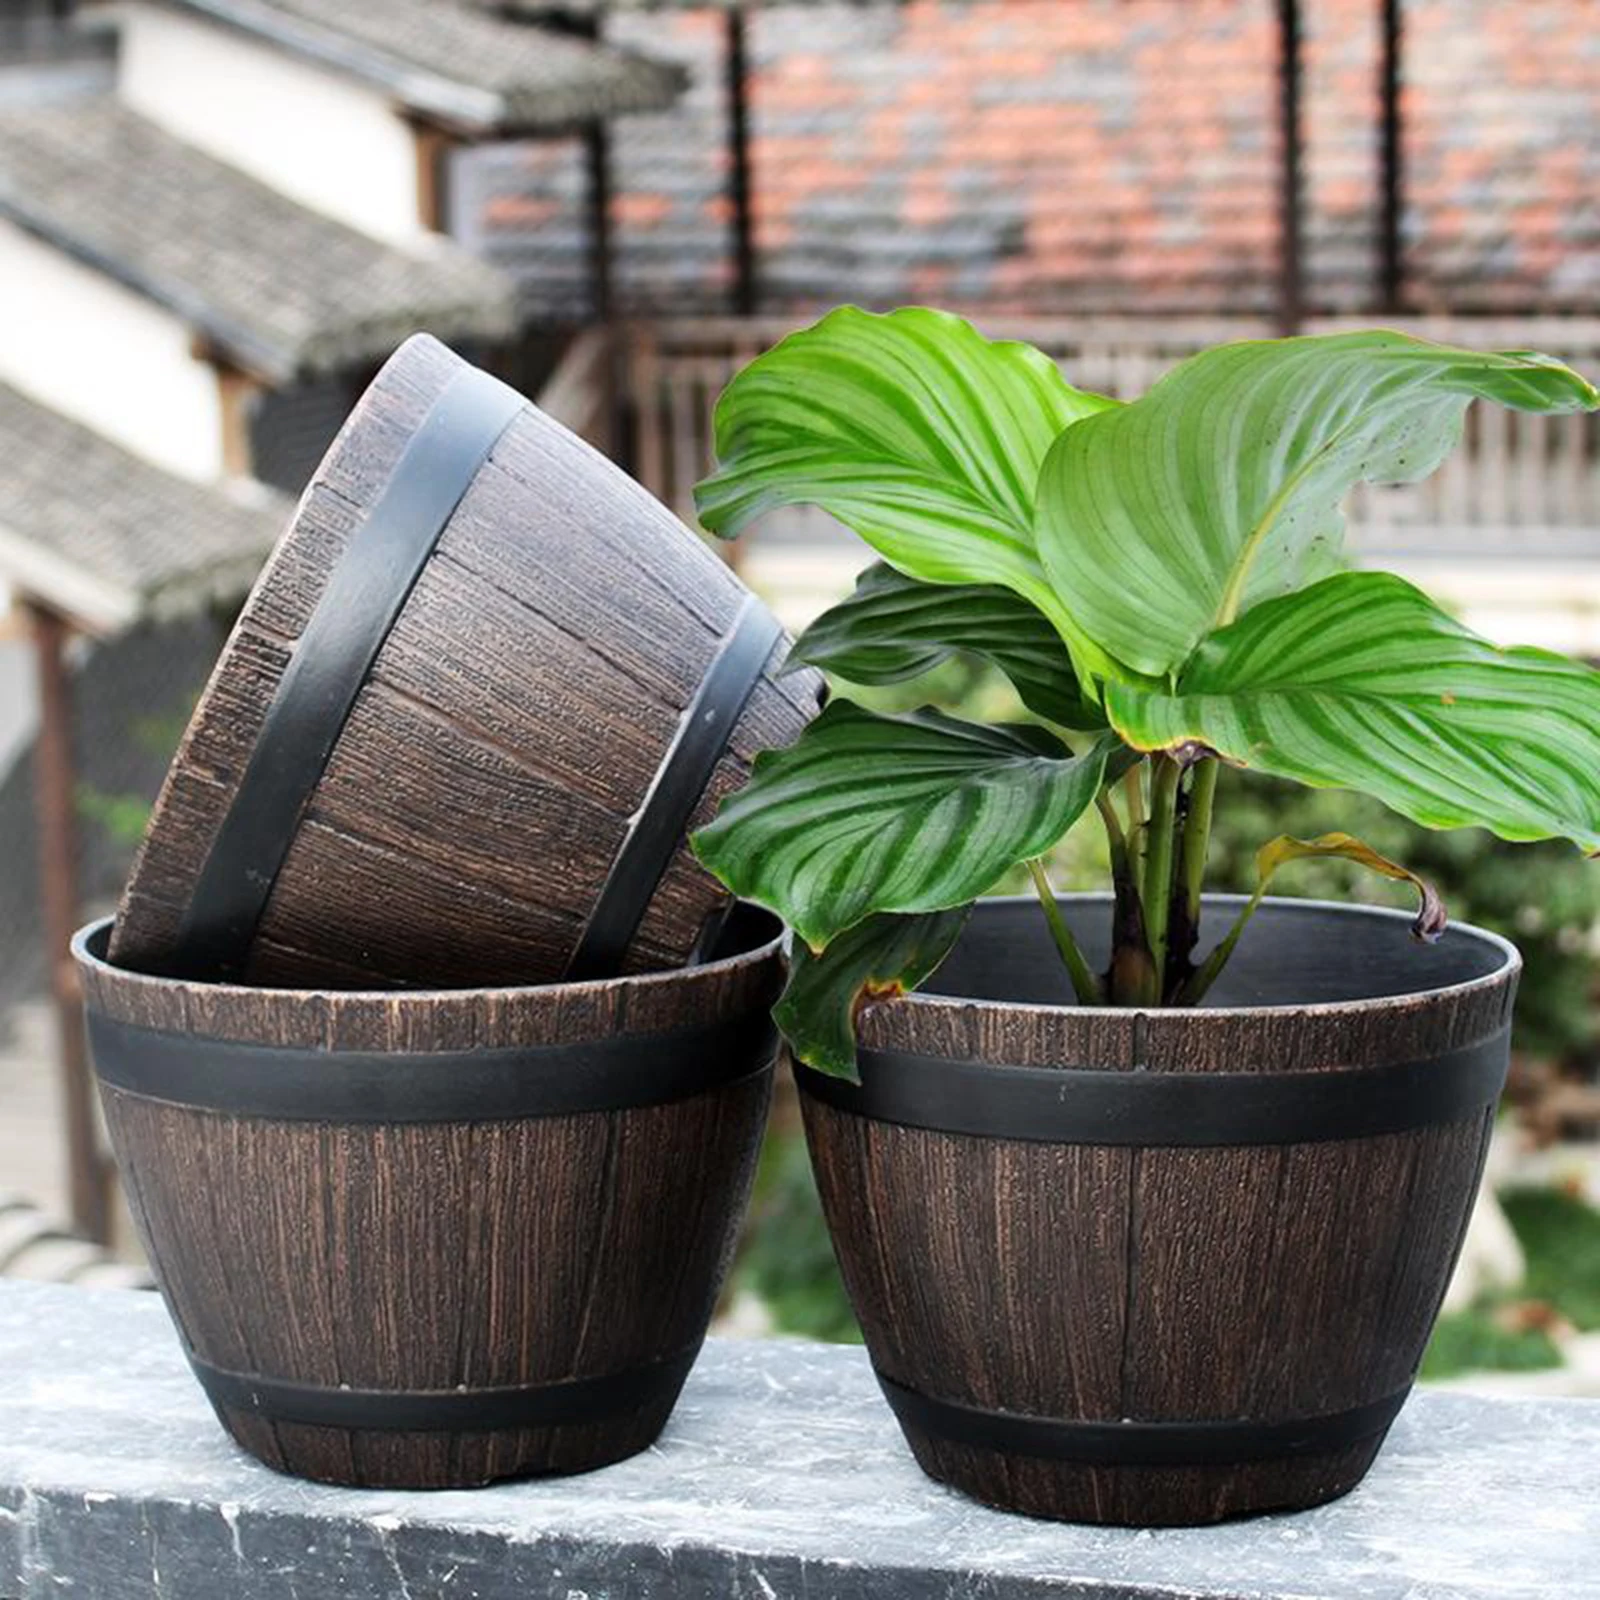 Rustic Barrel Resin Ornamental Flower Pot Flower Basket Plant Pots Planter For Home Garden Indoor Outdoor Decoration